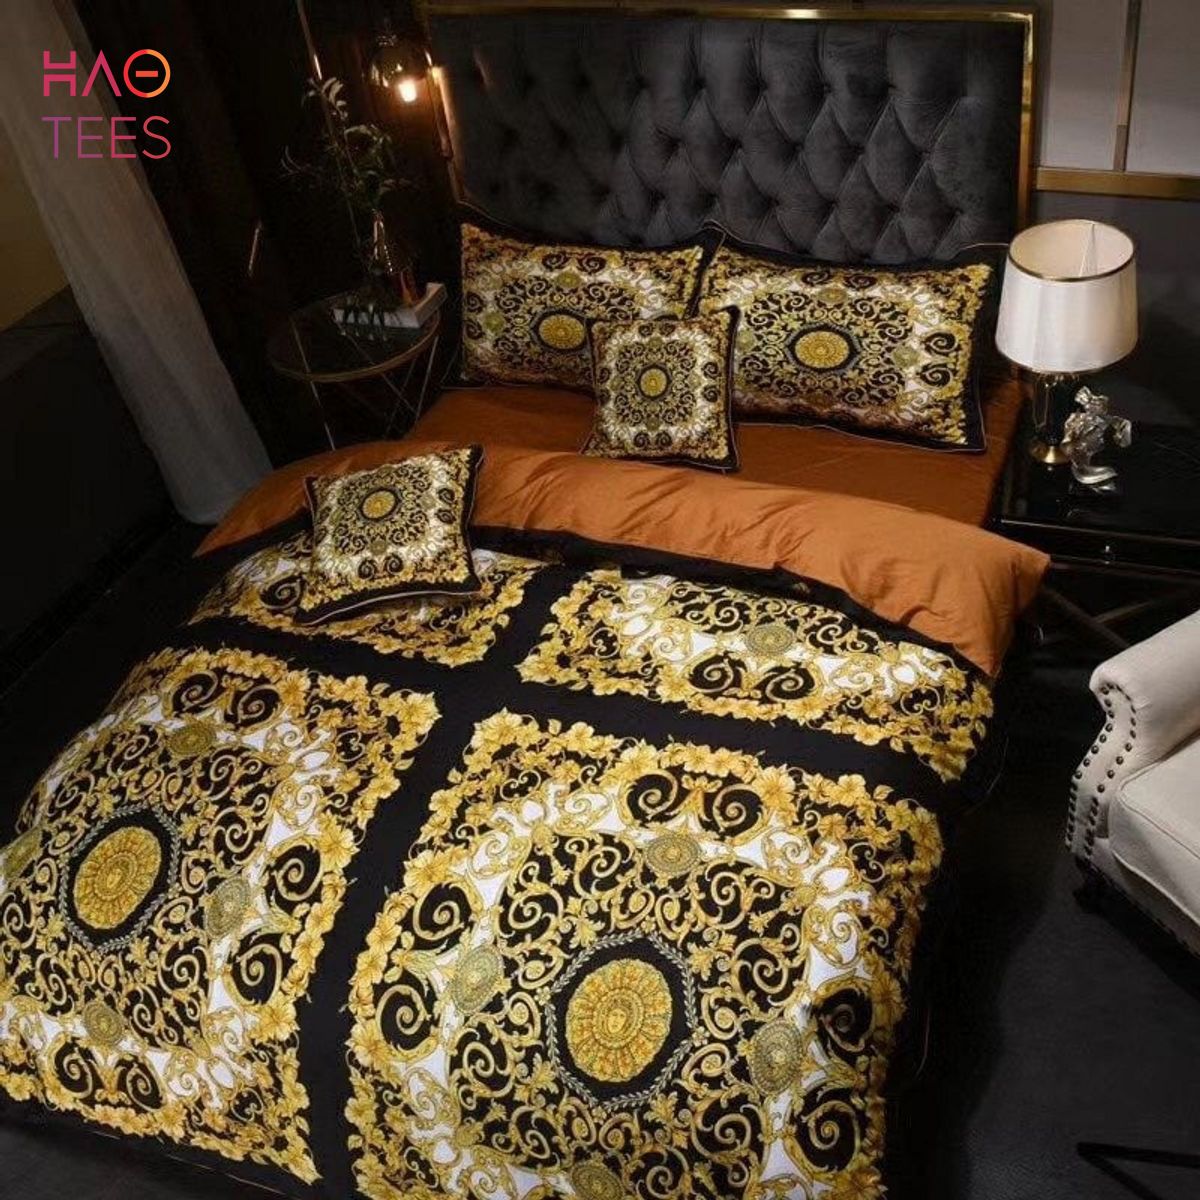 HOT Black Mix Golden Luxury Color Bedding Sets POD Design